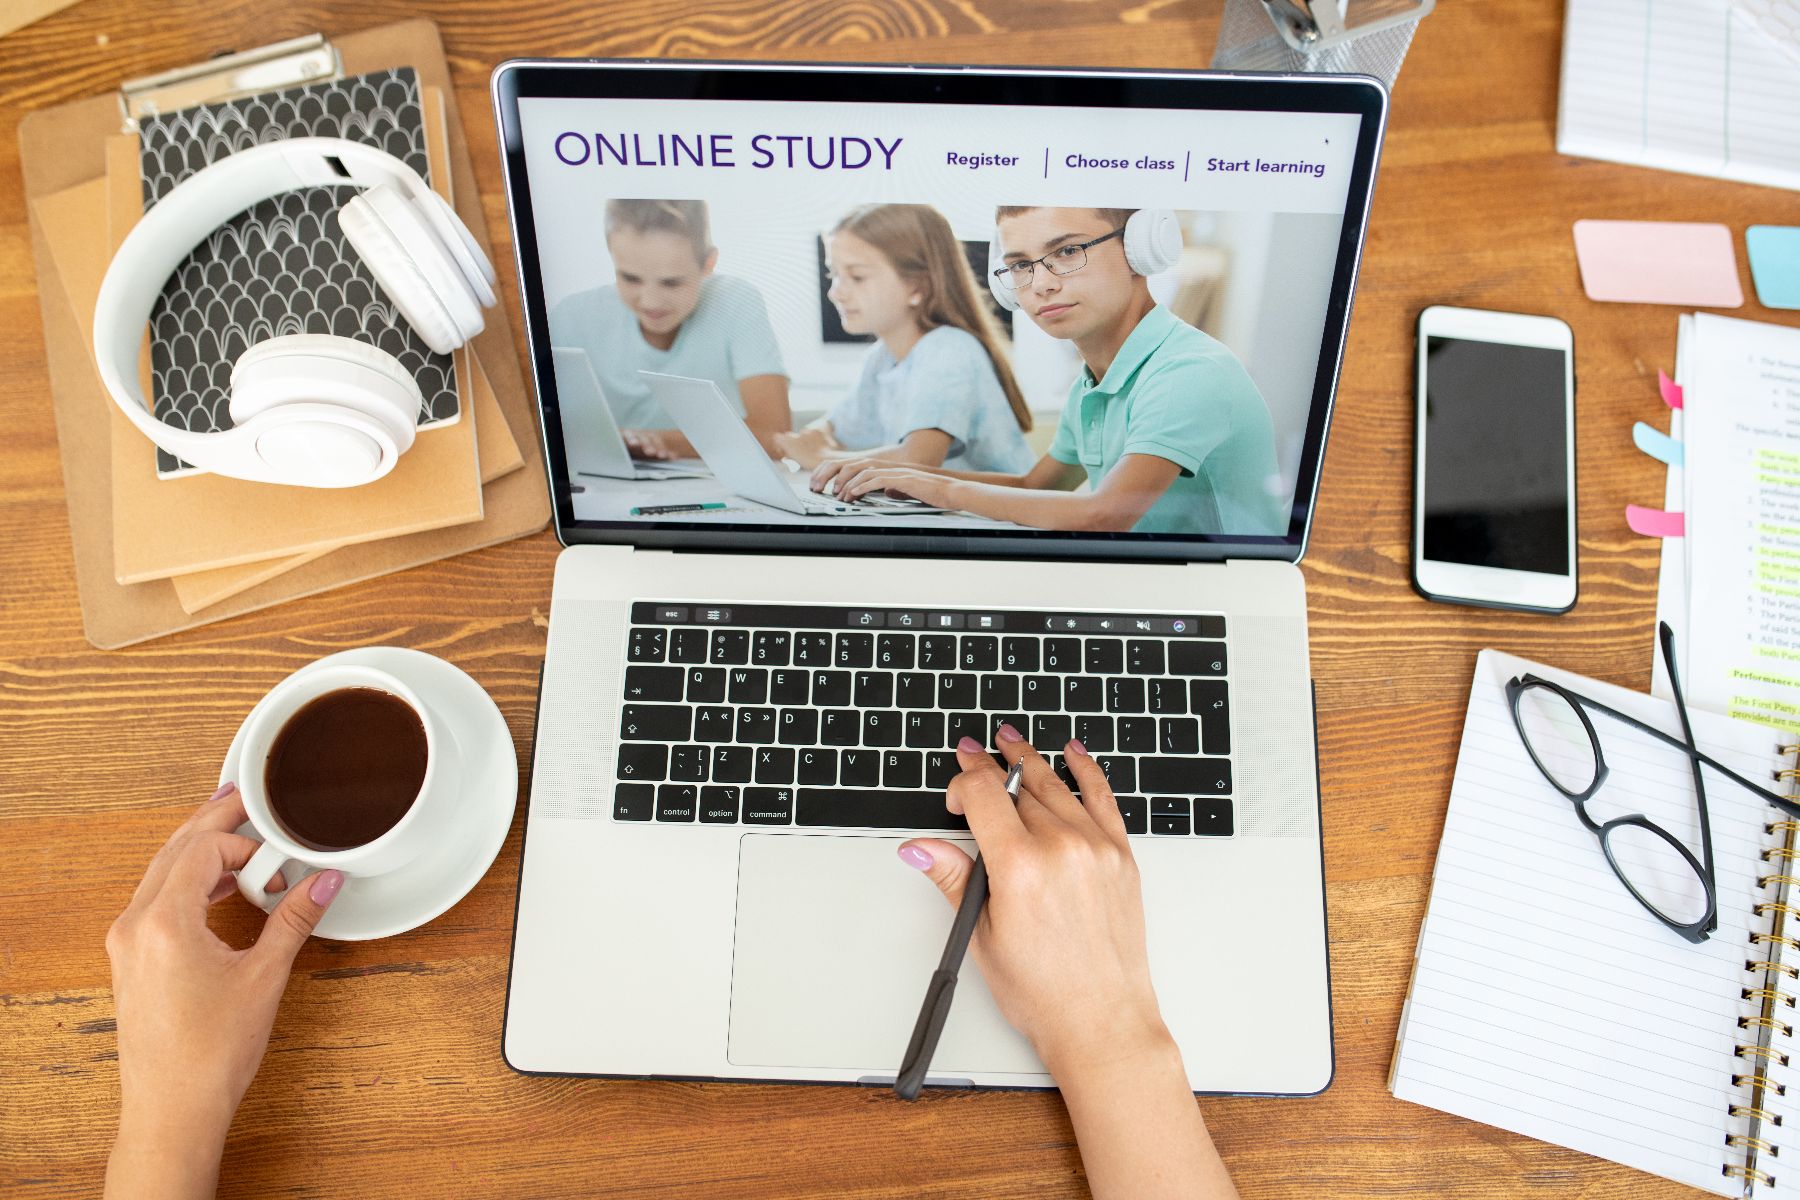 Online cursus volgen met laptop en koffie